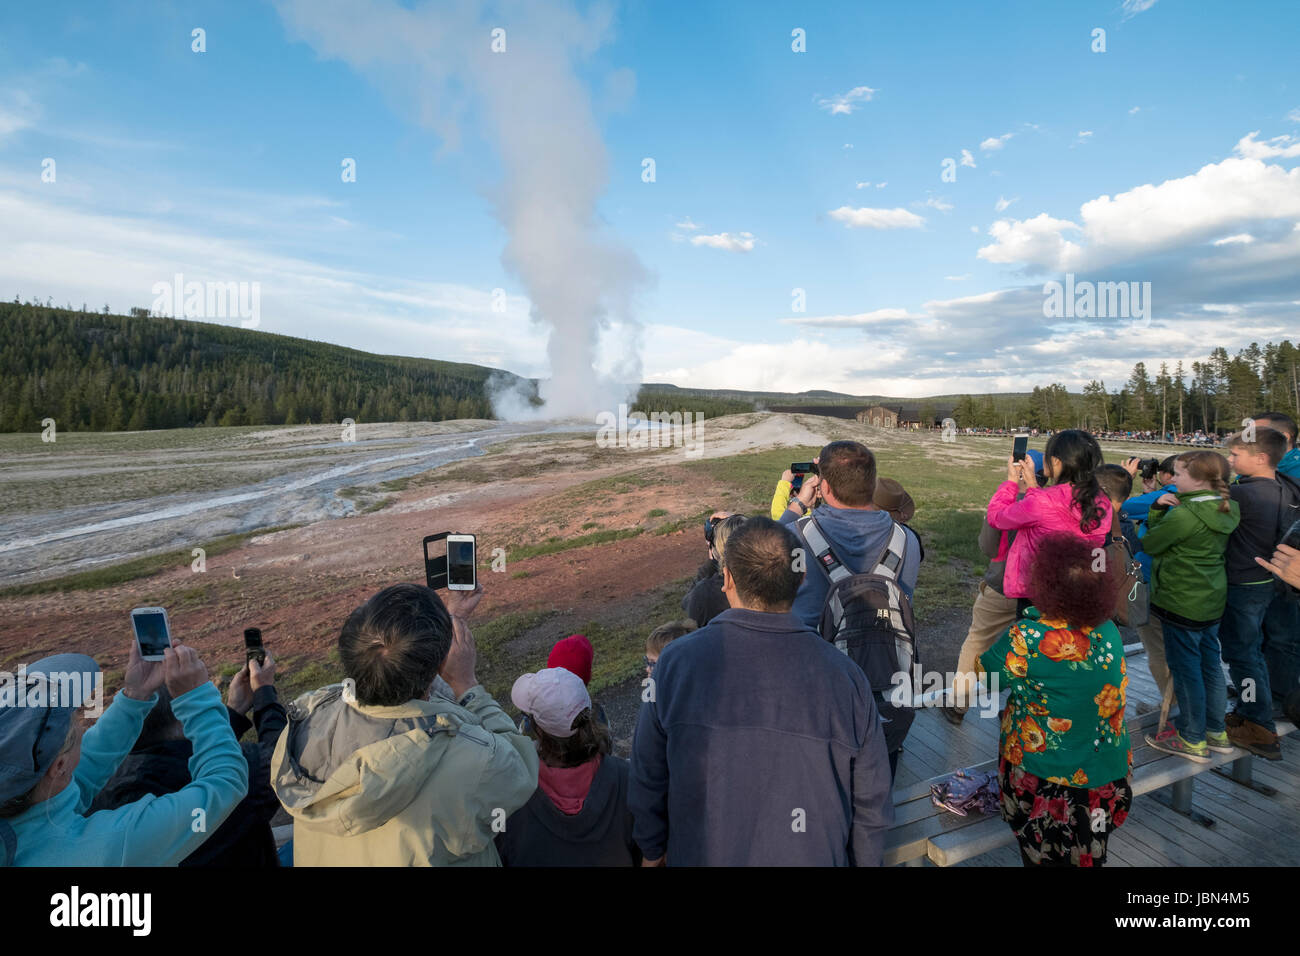 Les visteurs regardent l'éruption du geyser Old Faithful dans le parc national de Yellowstone, Wyoming, États-Unis. Banque D'Images